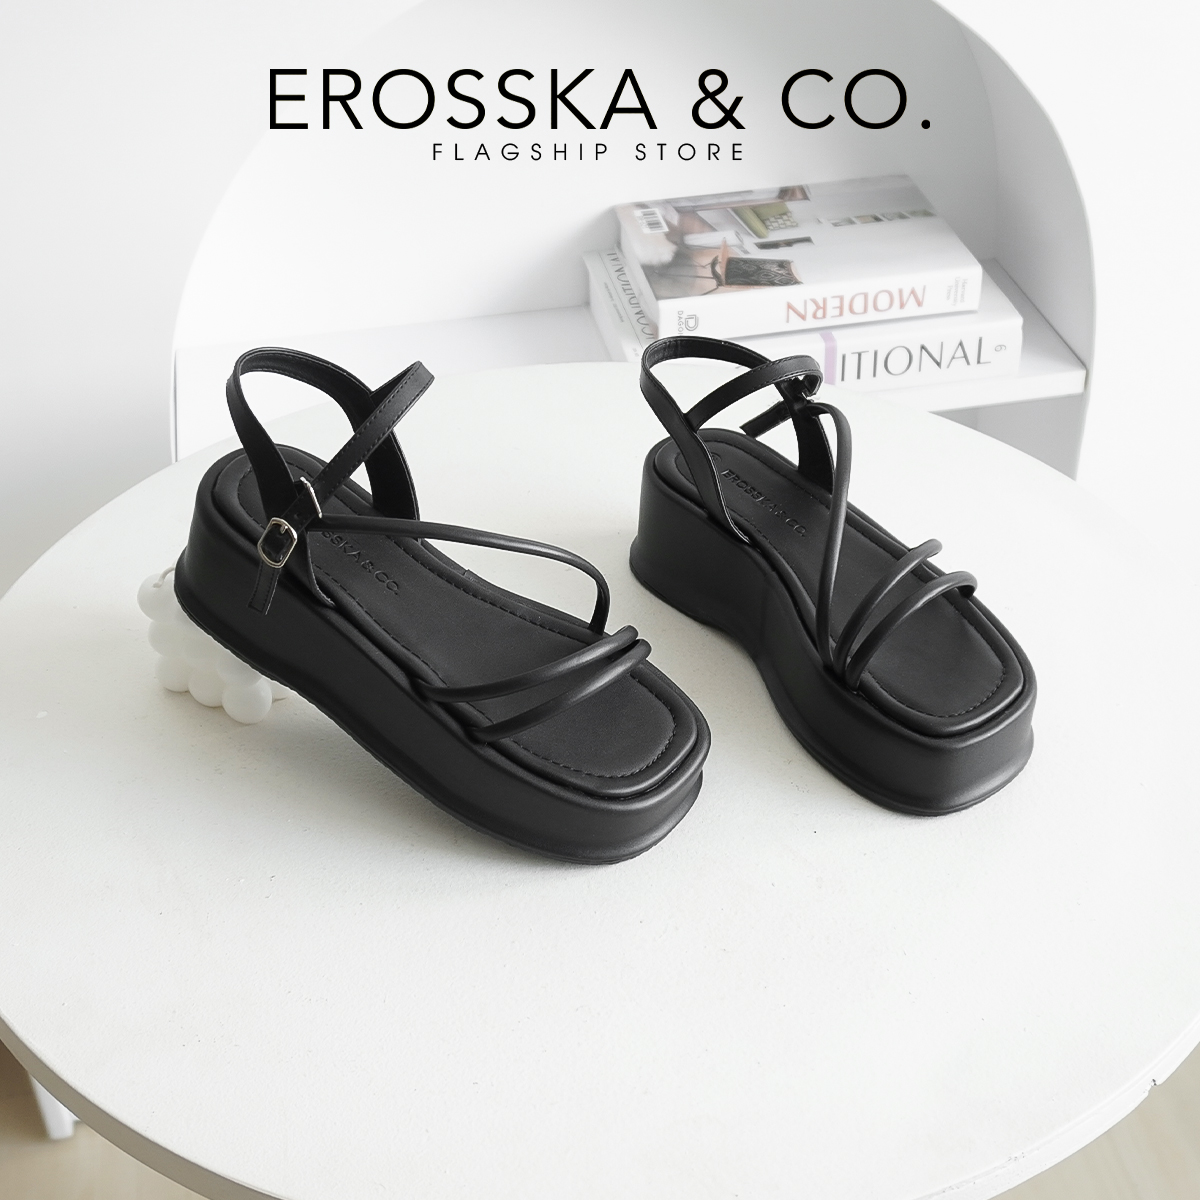 Erosska - Giày sandal nữ đế xuồng phối dây quai mảnh kiểu dáng basic cao 6cm màu đen - SB015